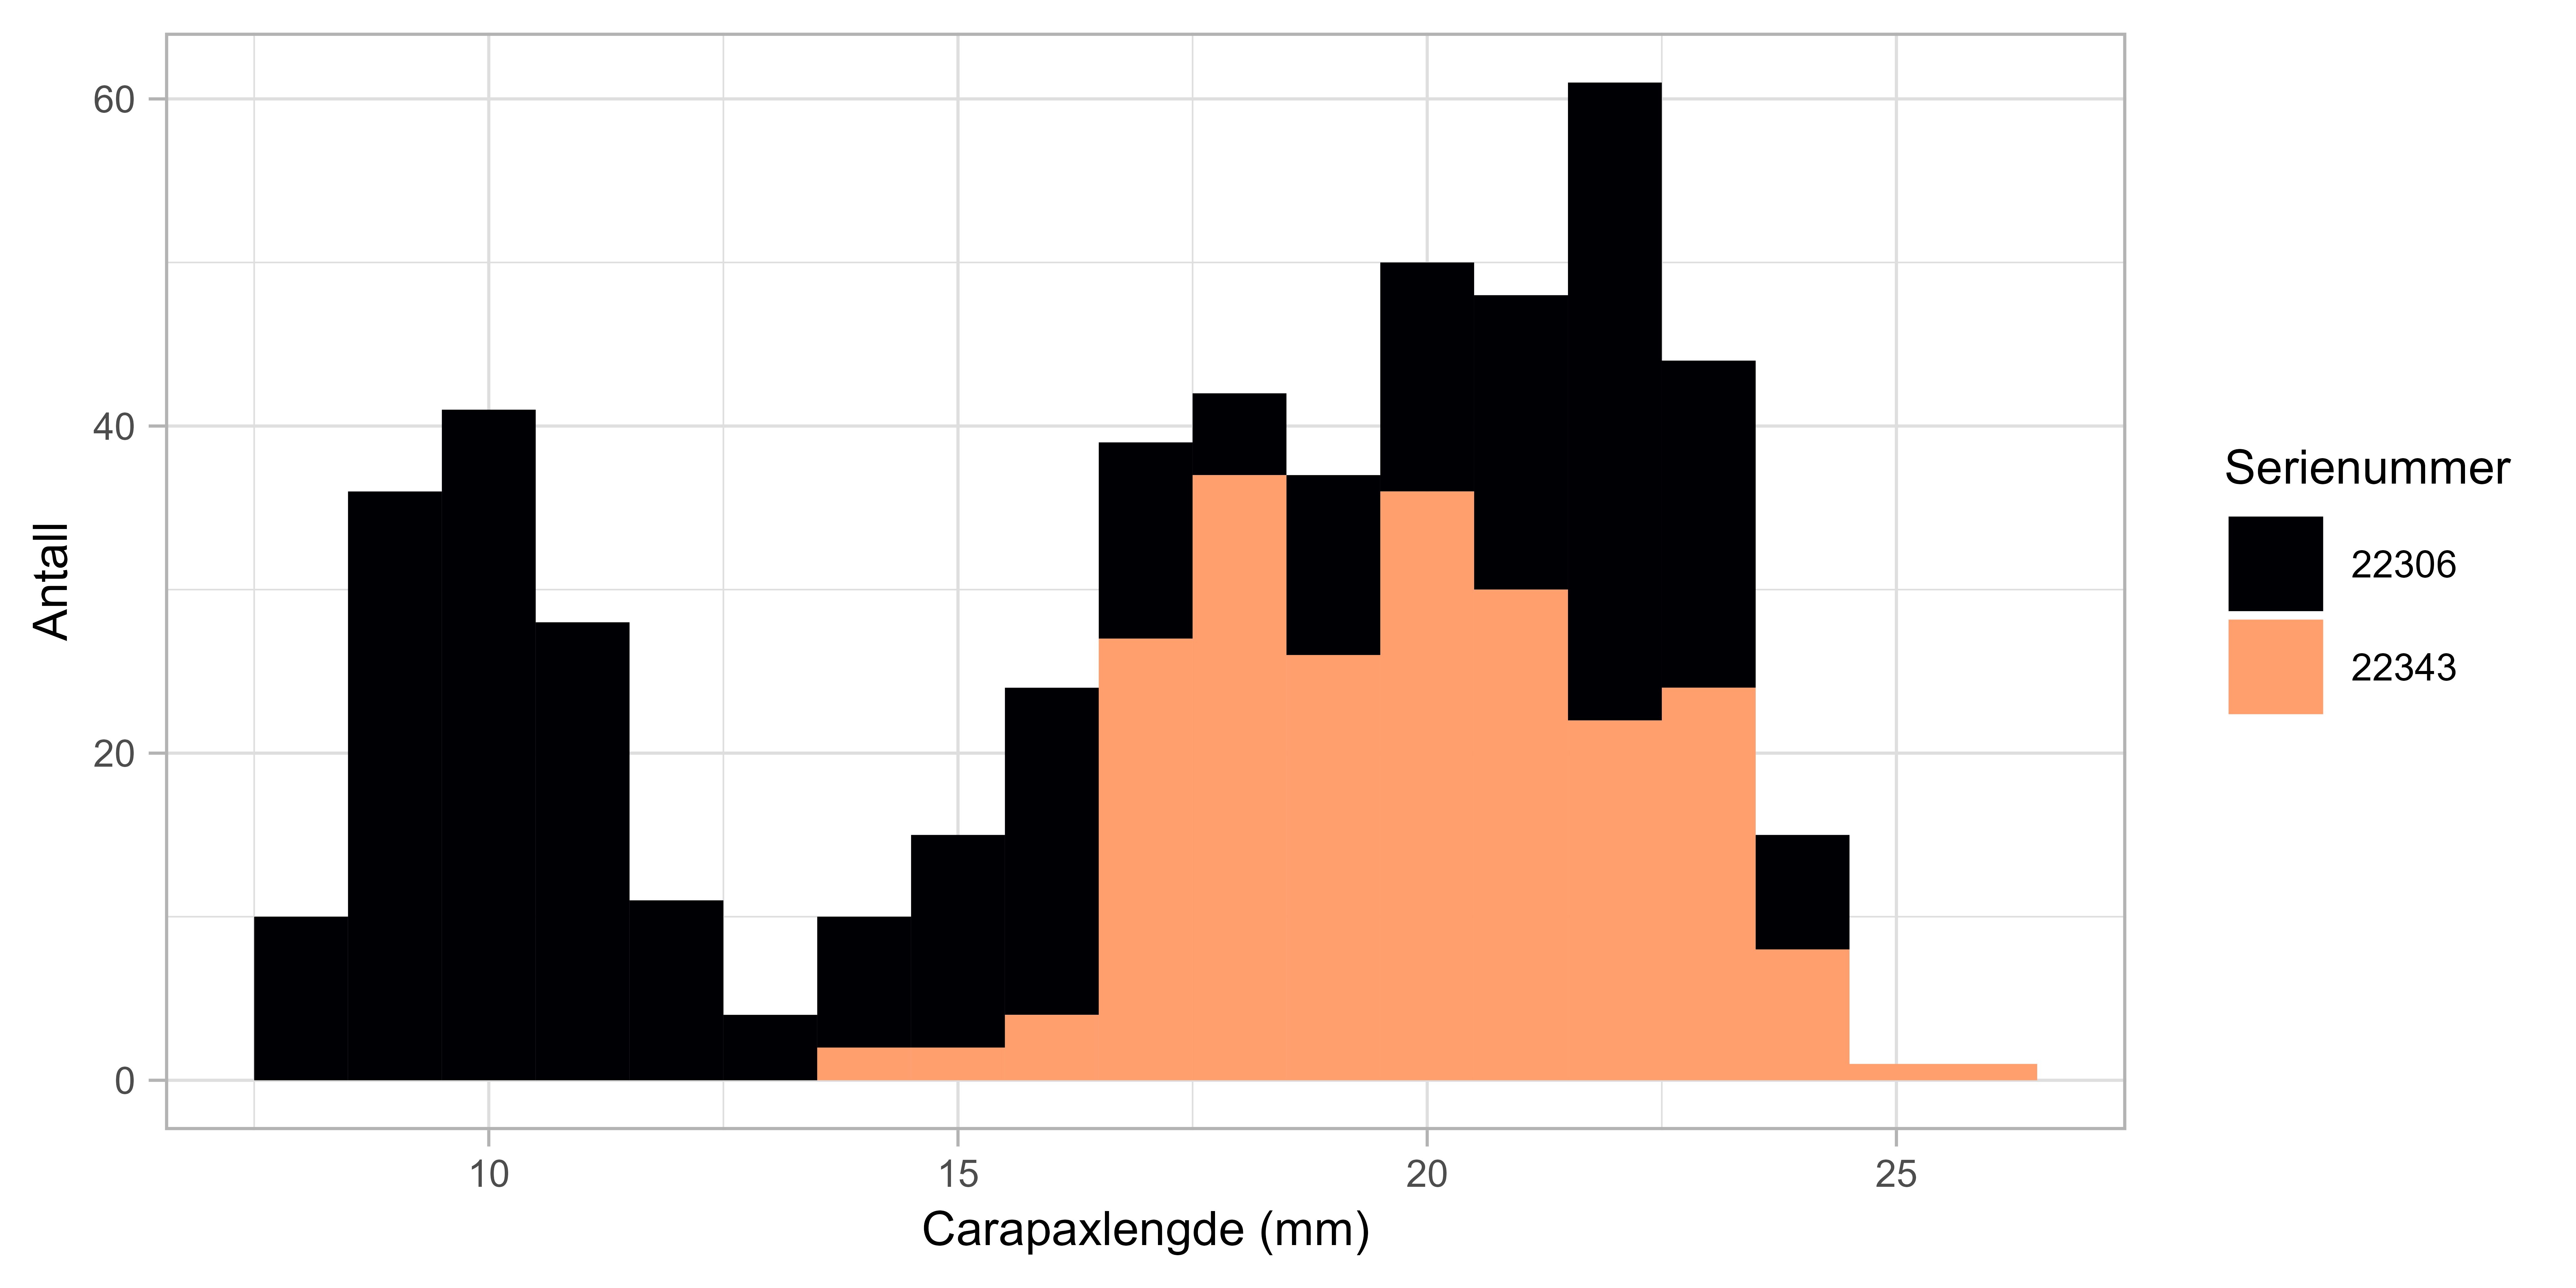 Figuren viser et histogram med lengdefordeling for dypvannsreke fra serienummer 22306 (svart) og nummer 22343 (oransje). X-aksen viser carapax-lengde (0-27 mm) og Y-aksen viser antall (0-60).